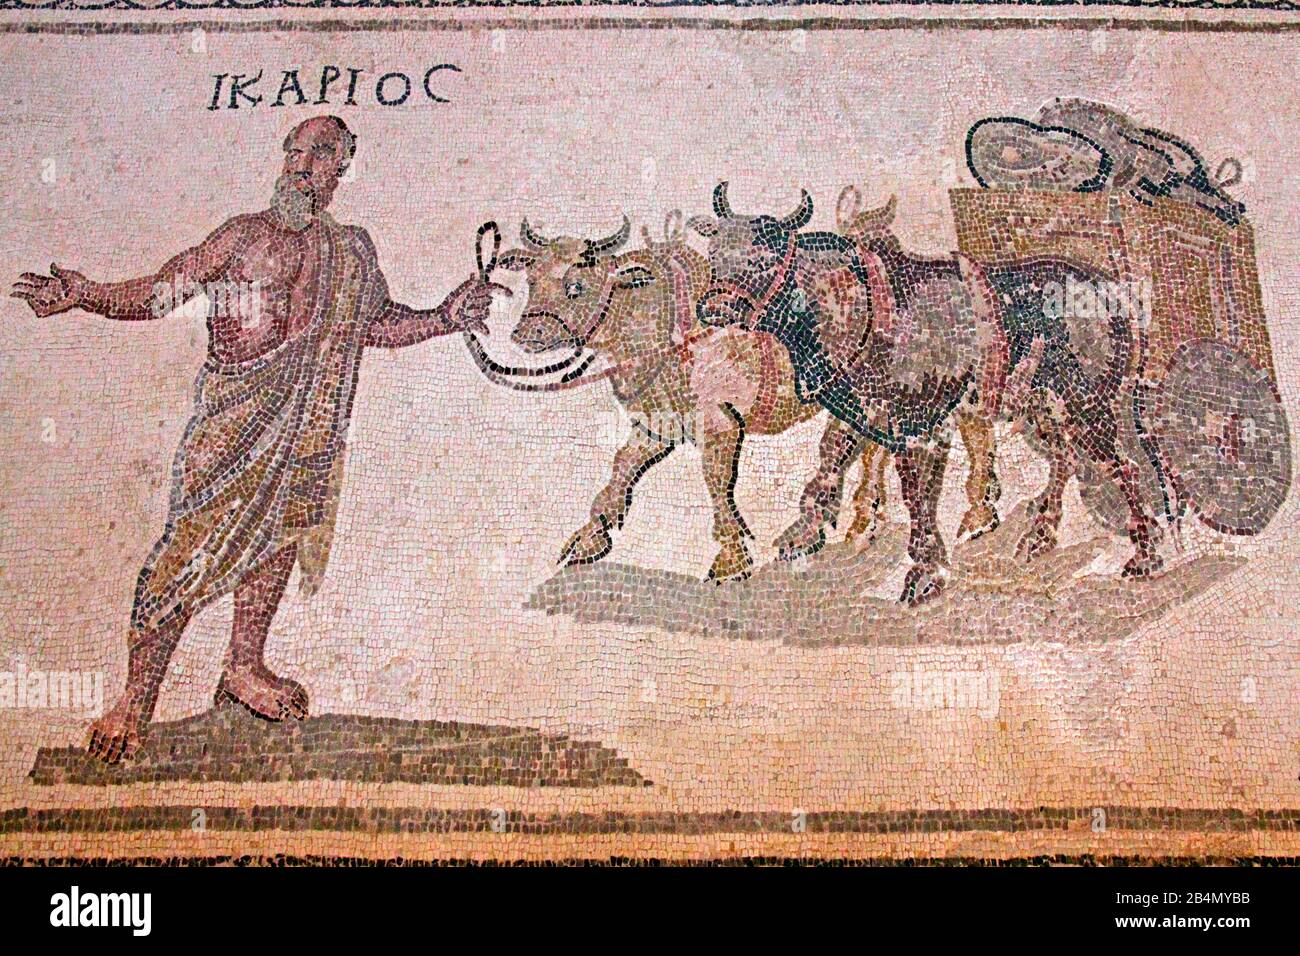 Paphos, Archäologischer Park, Haus des Dionysos, Ikarios wird von einem Team von Ochsen angeführt, die eine Karre mit Weinröhren ziehen. Zypern, griechische Teil Stockfoto